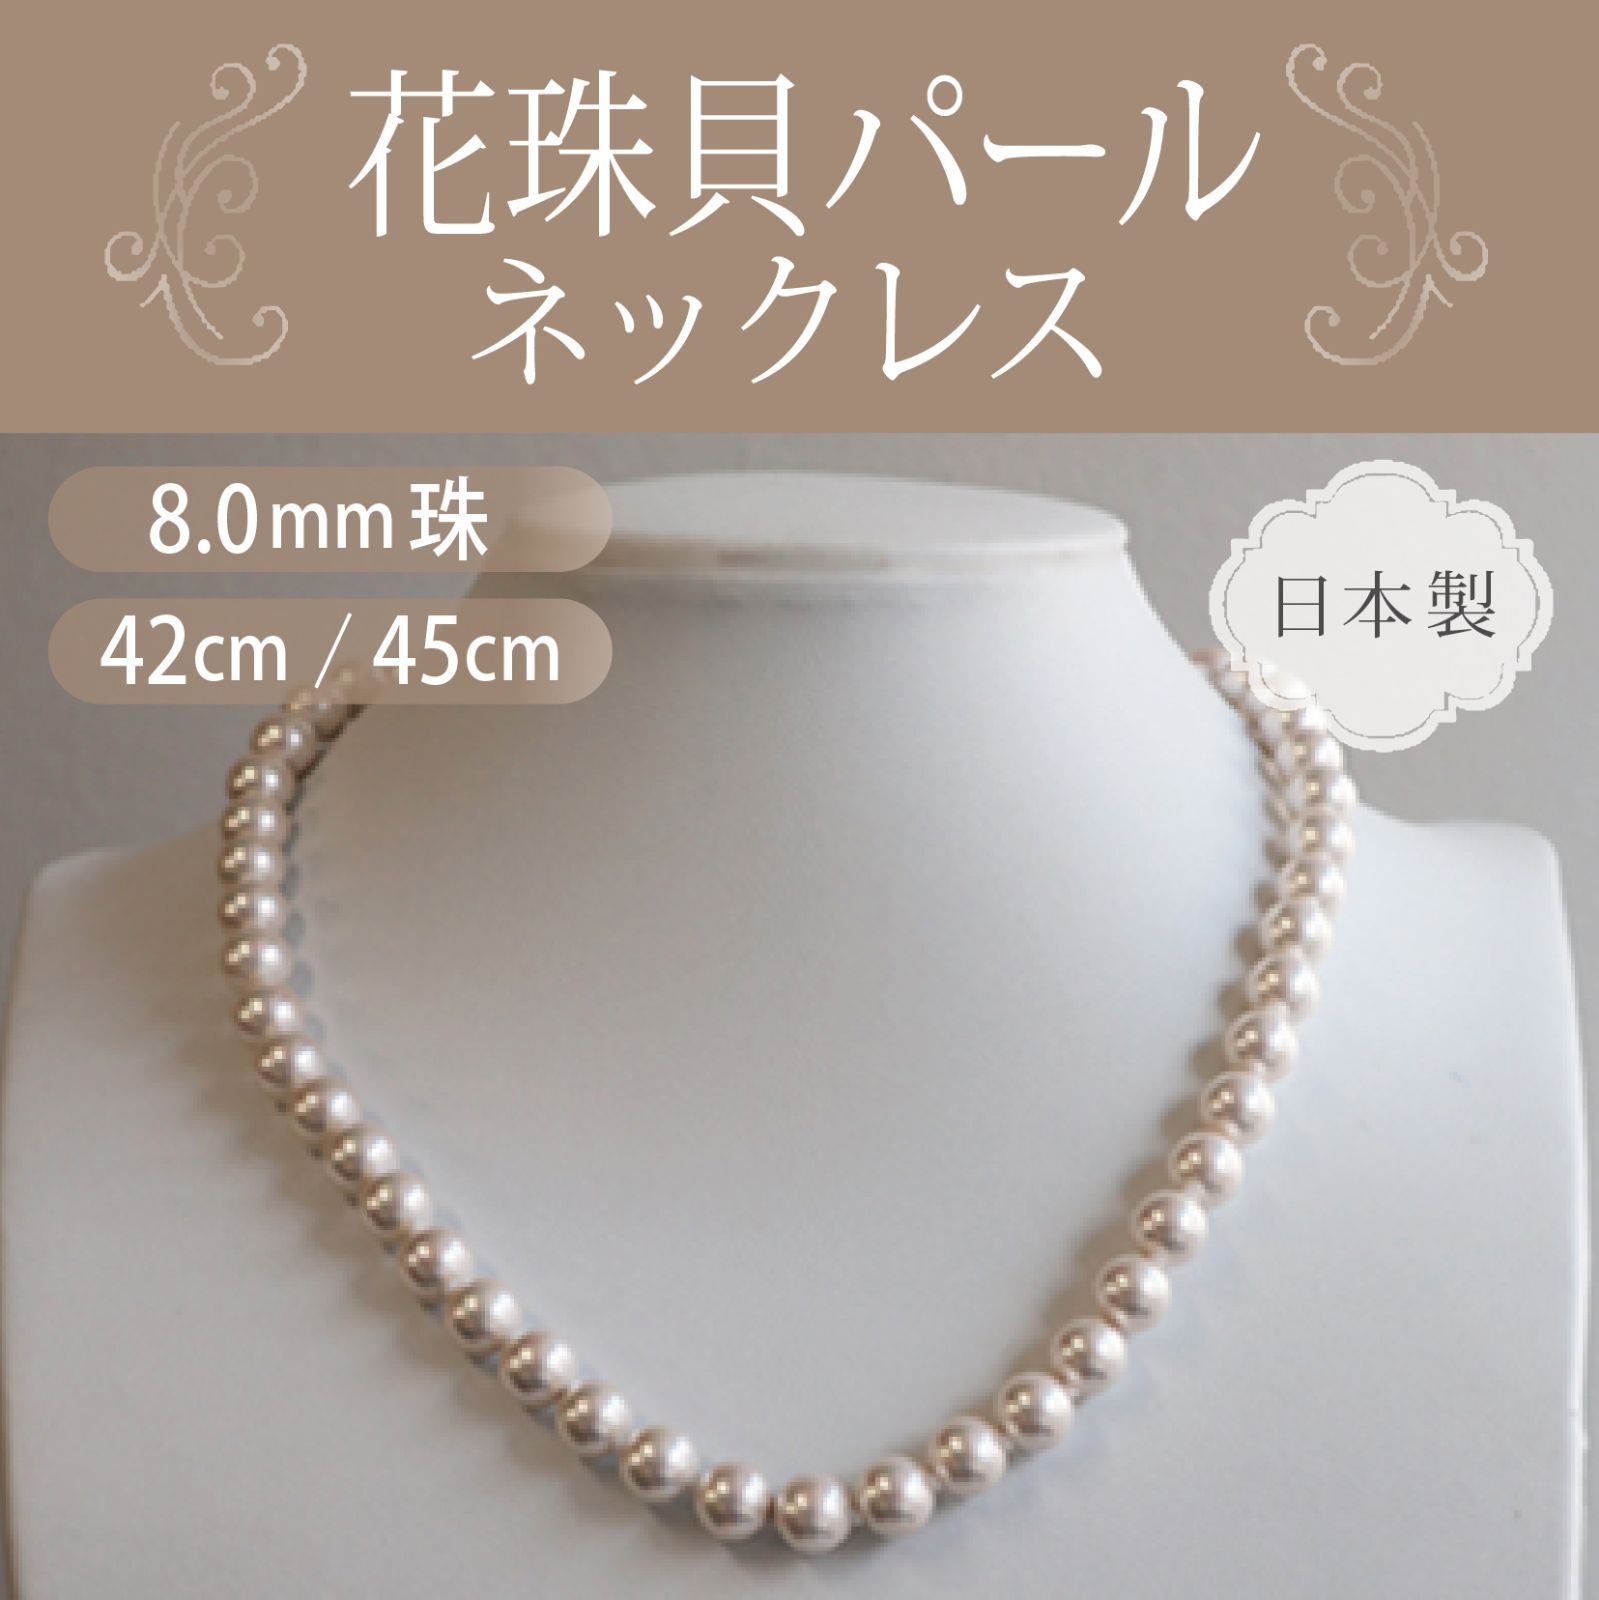 【色: ホワイト/45cm/イヤリングセット】パールネックレス  日本製 花珠貝